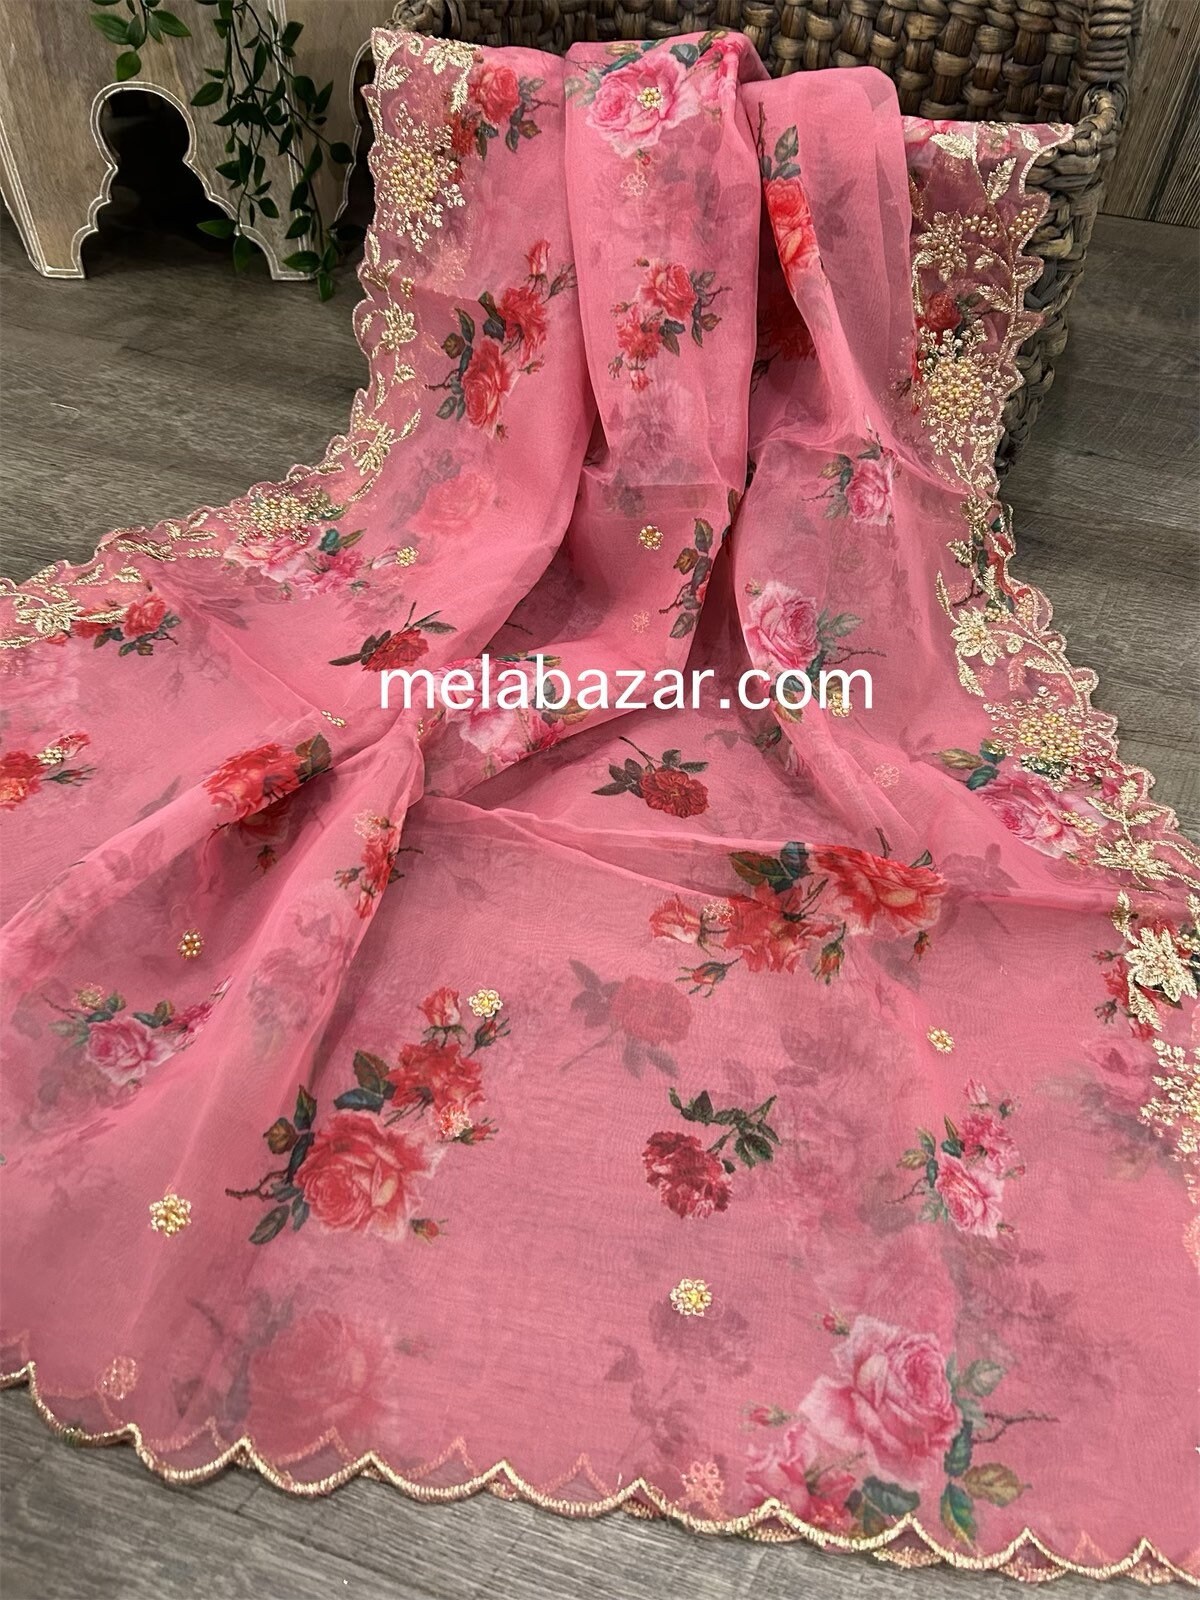 Customised bridal lehenga. Stunning kanchi pattu lehenga and blouse with  net dupatta. Blouse with hand embroidery